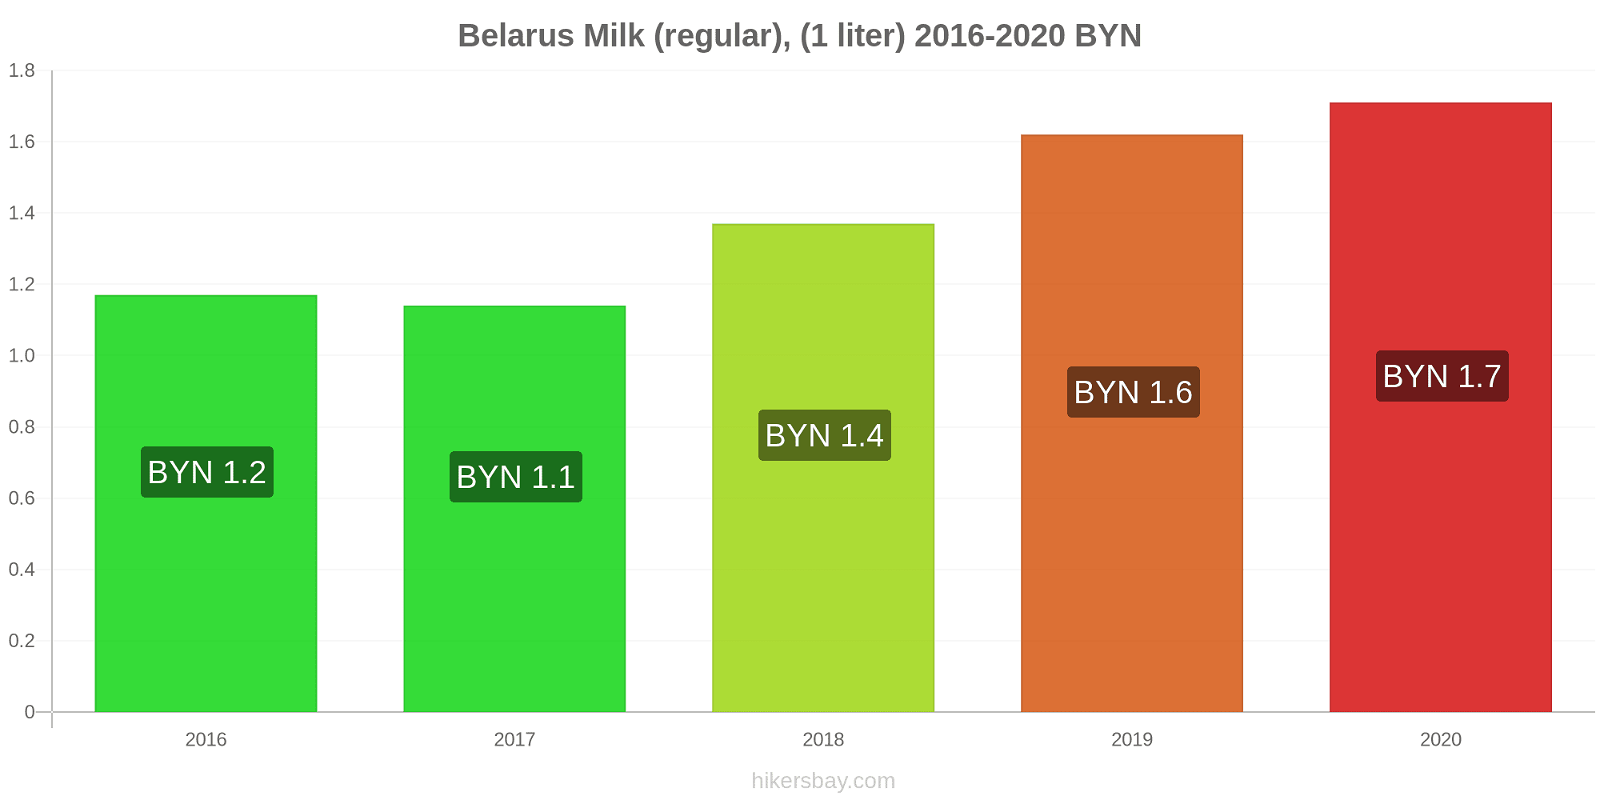 Belarus price changes Milk (regular), (1 liter) hikersbay.com